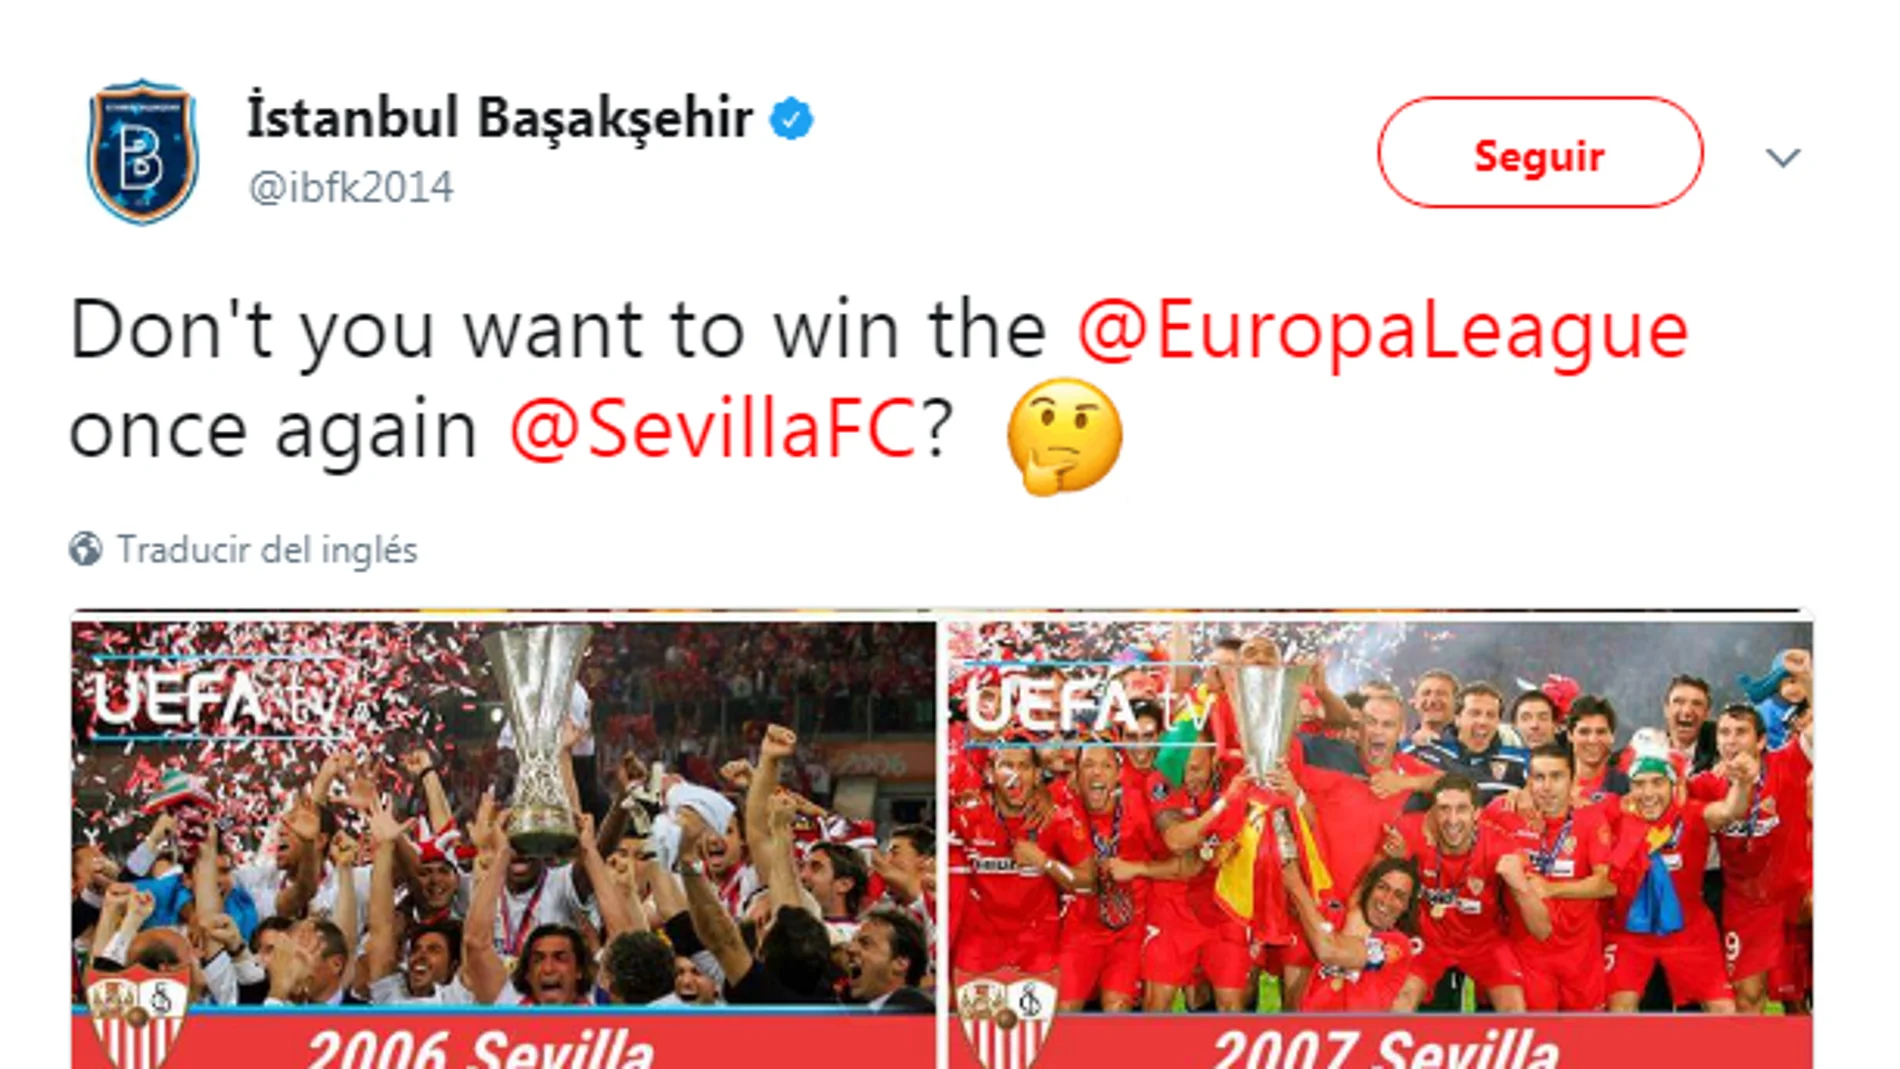 El tuit del Basaksehir mencionando al Sevilla